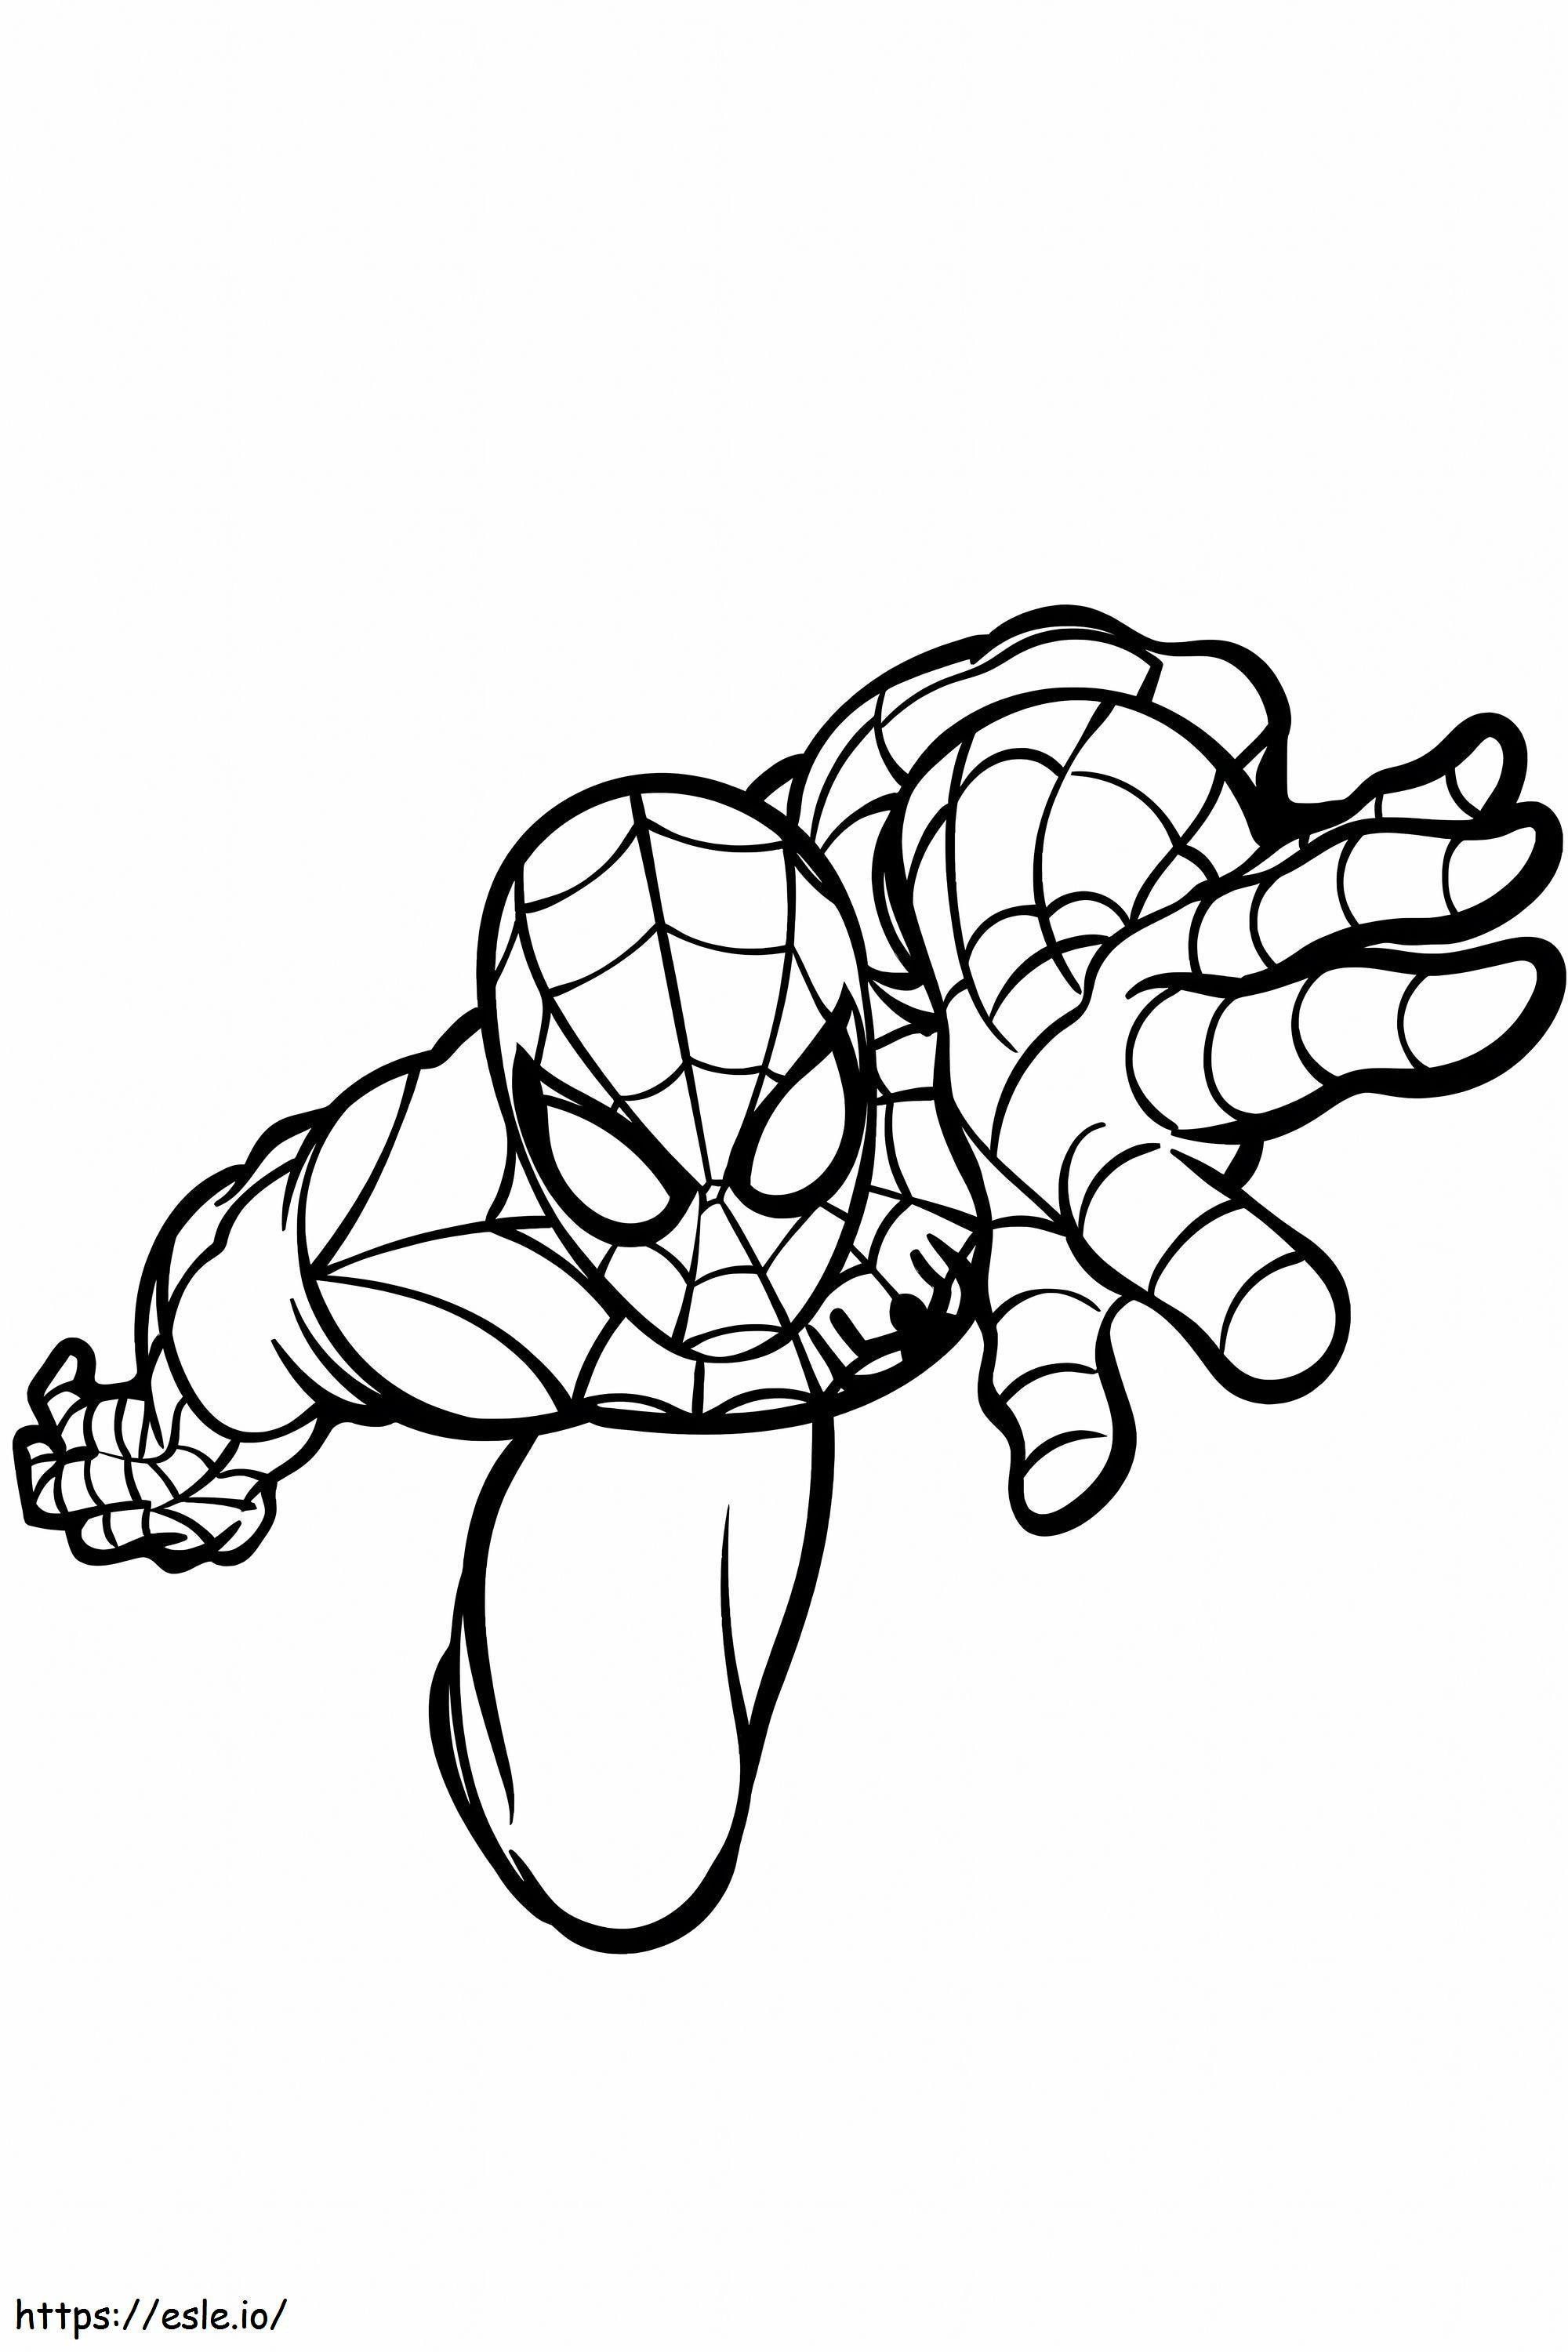 Escalada do Homem-Aranha para colorir